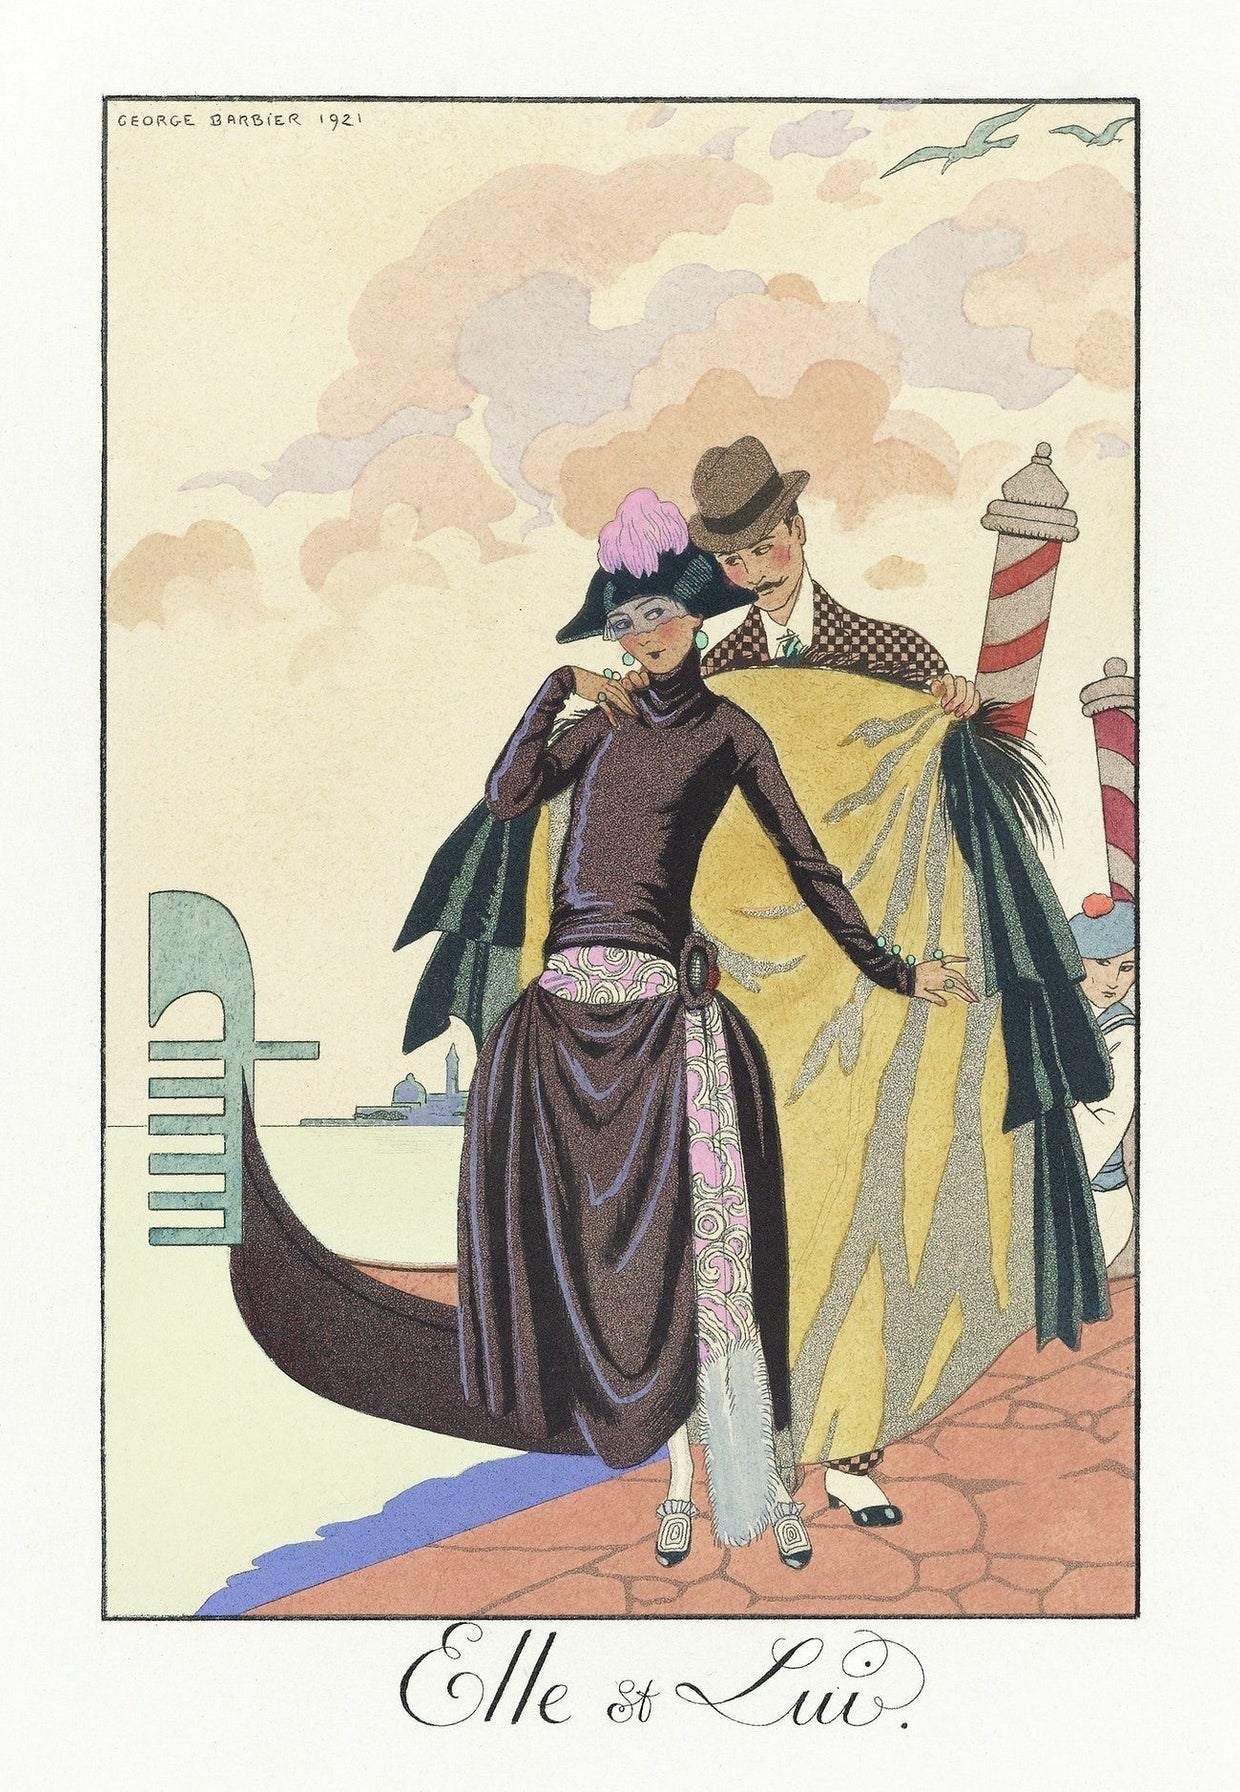 Elle et Lui (Her and him) (1920s) Venice | Georges Barbier prints Posters, Prints, & Visual Artwork The Trumpet Shop   